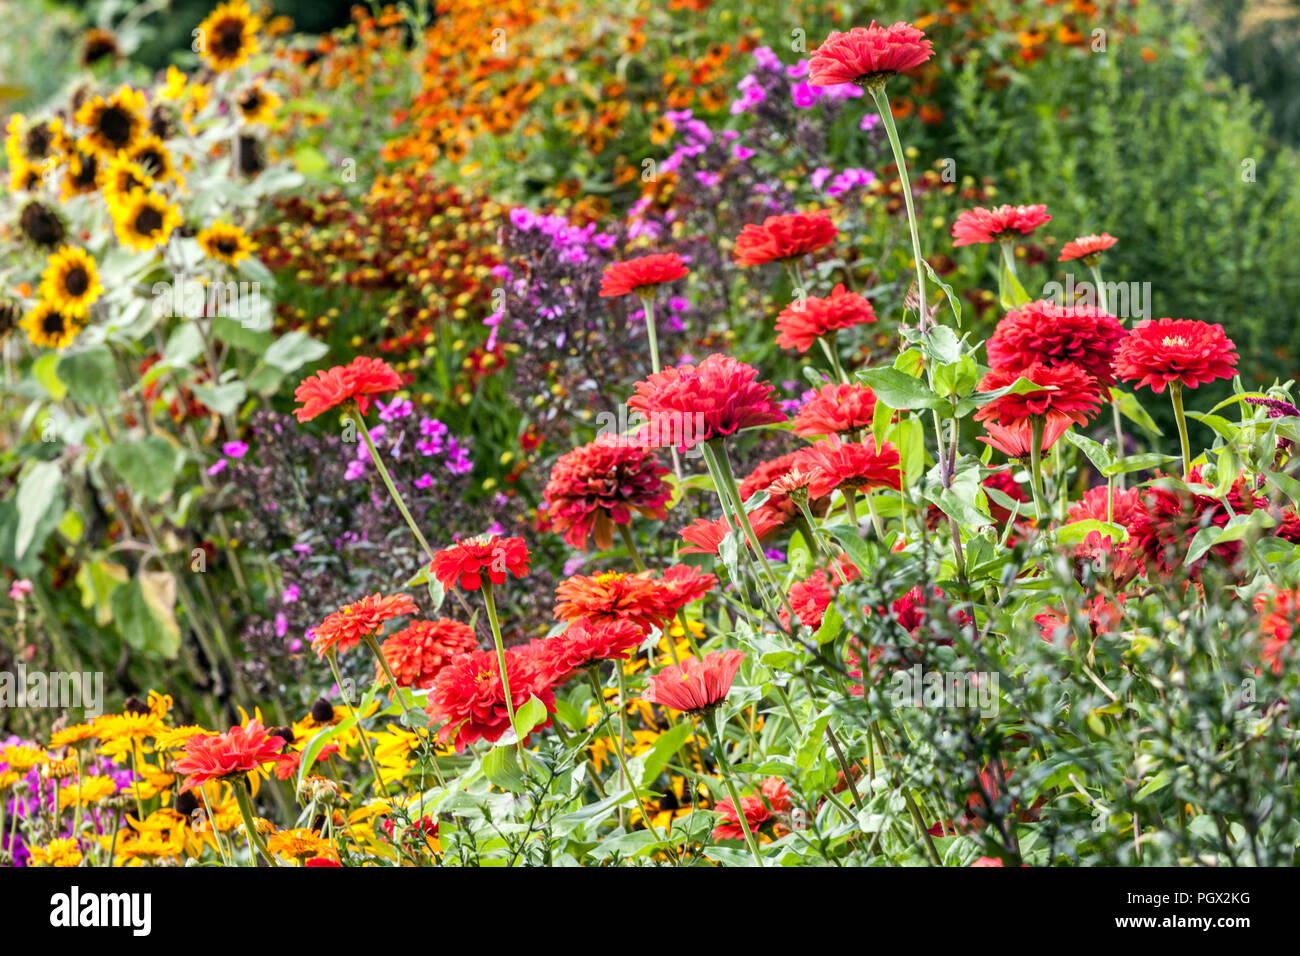 Misto bordo letto di fiori estivi, Zinnia rossa, Rudbeckia, girasoli, fiori belli nel cottage giardino estivo Foto Stock